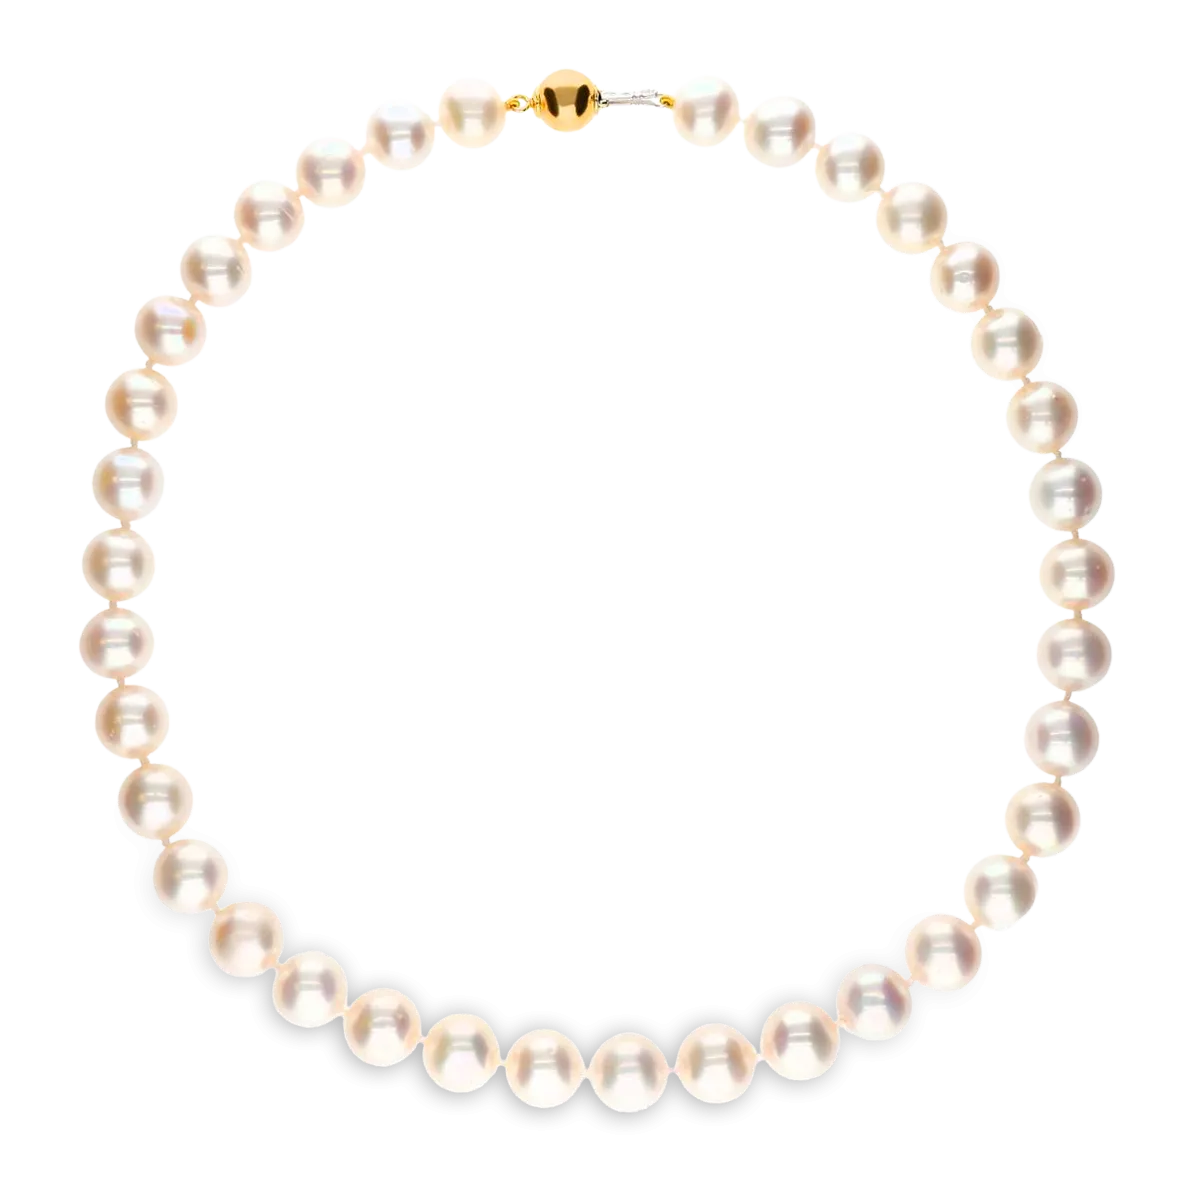 Collar de perlas con cierre oro 18 quilates